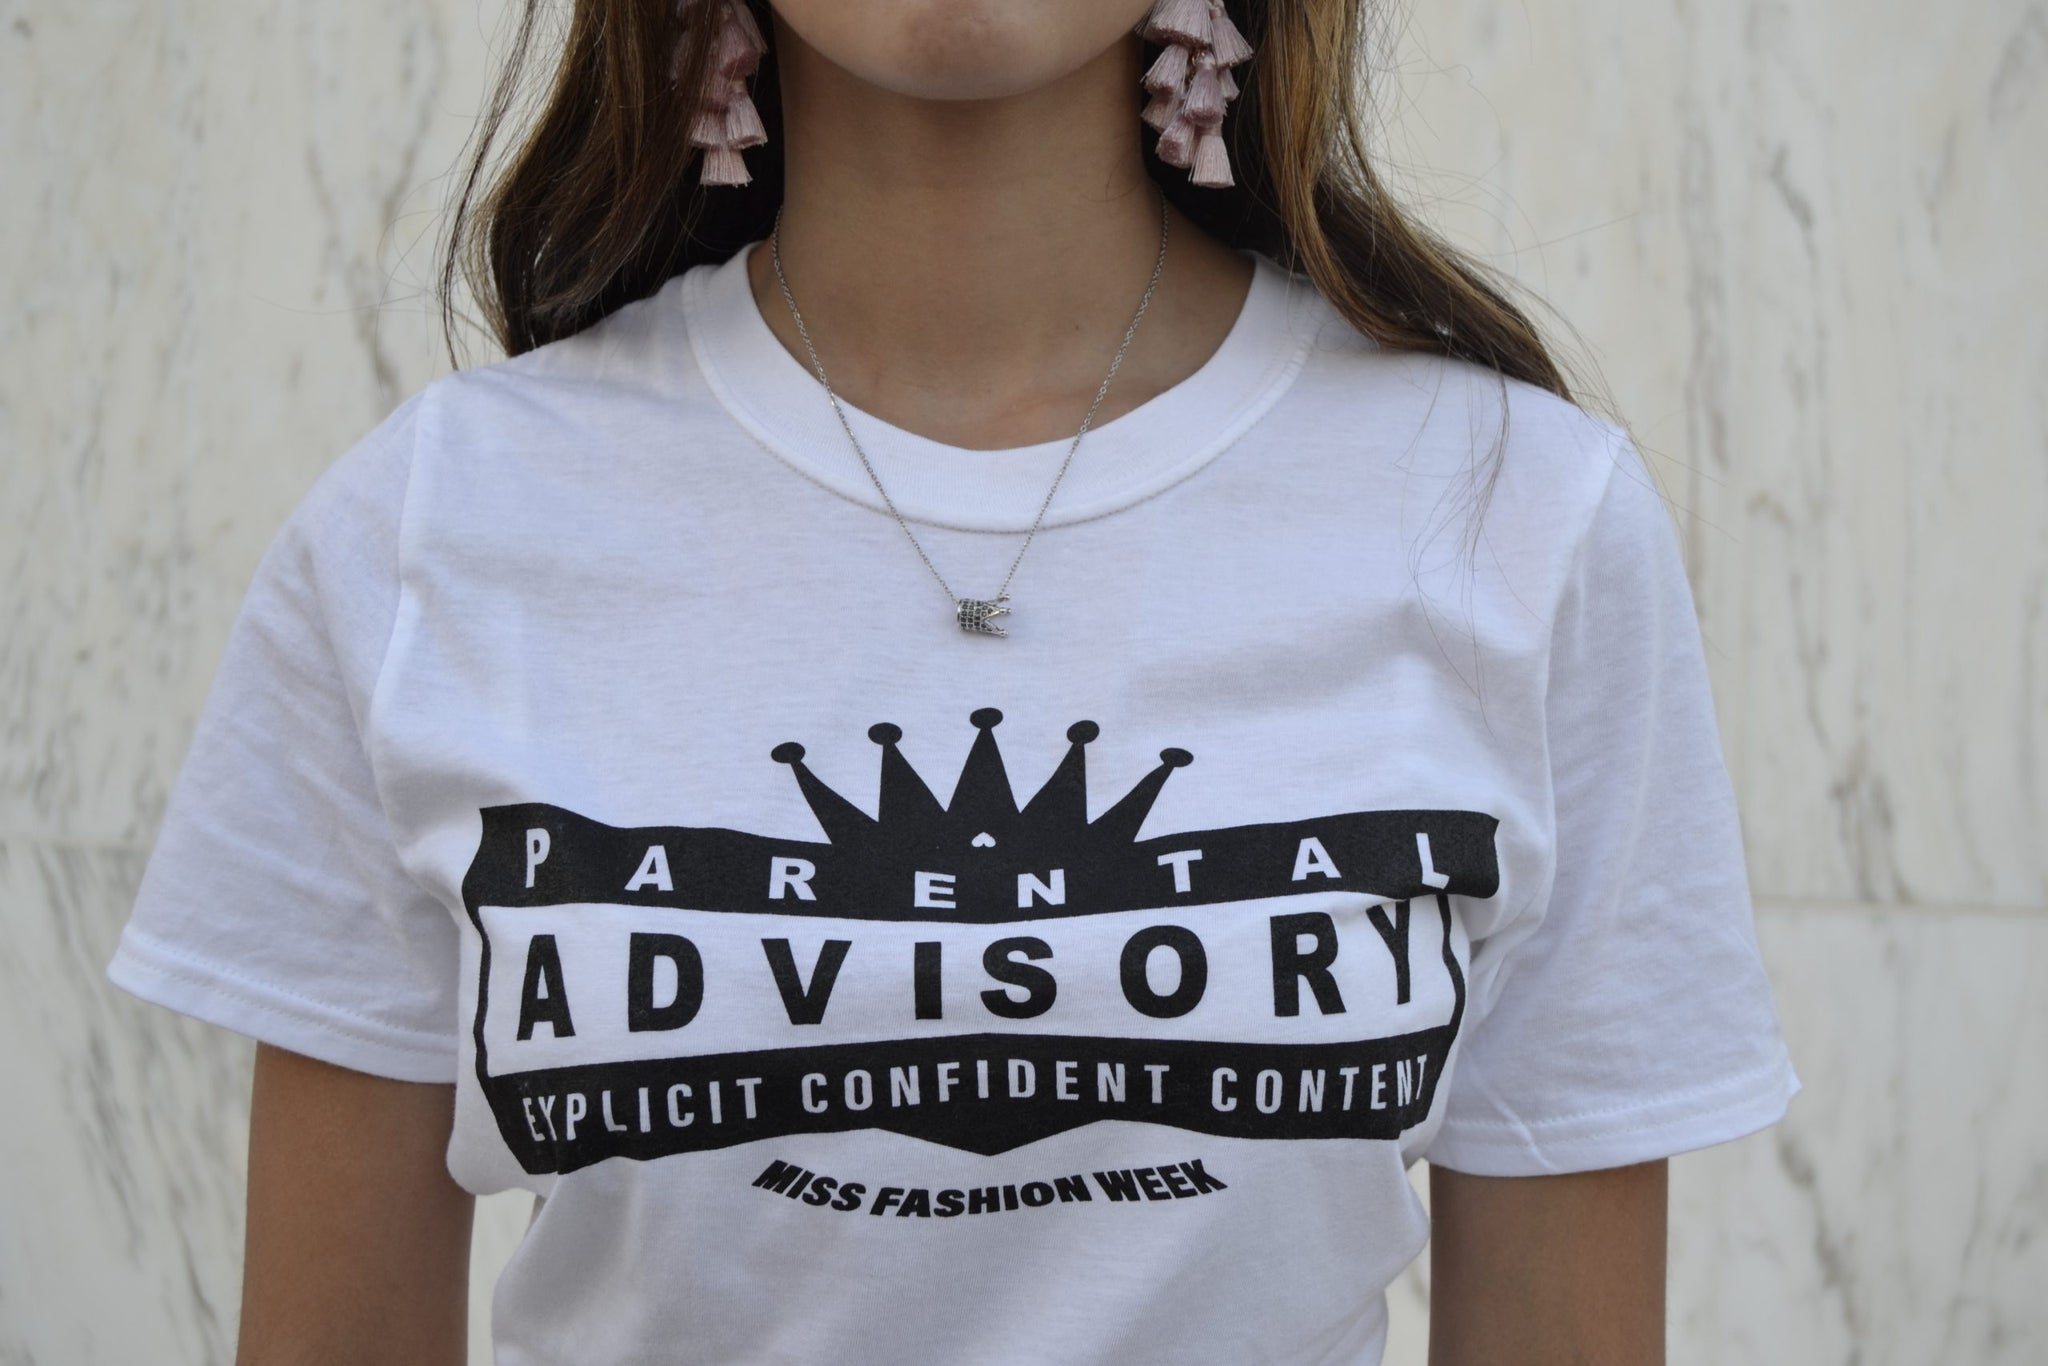 Miss Fashion Week Affirmation Tshirts